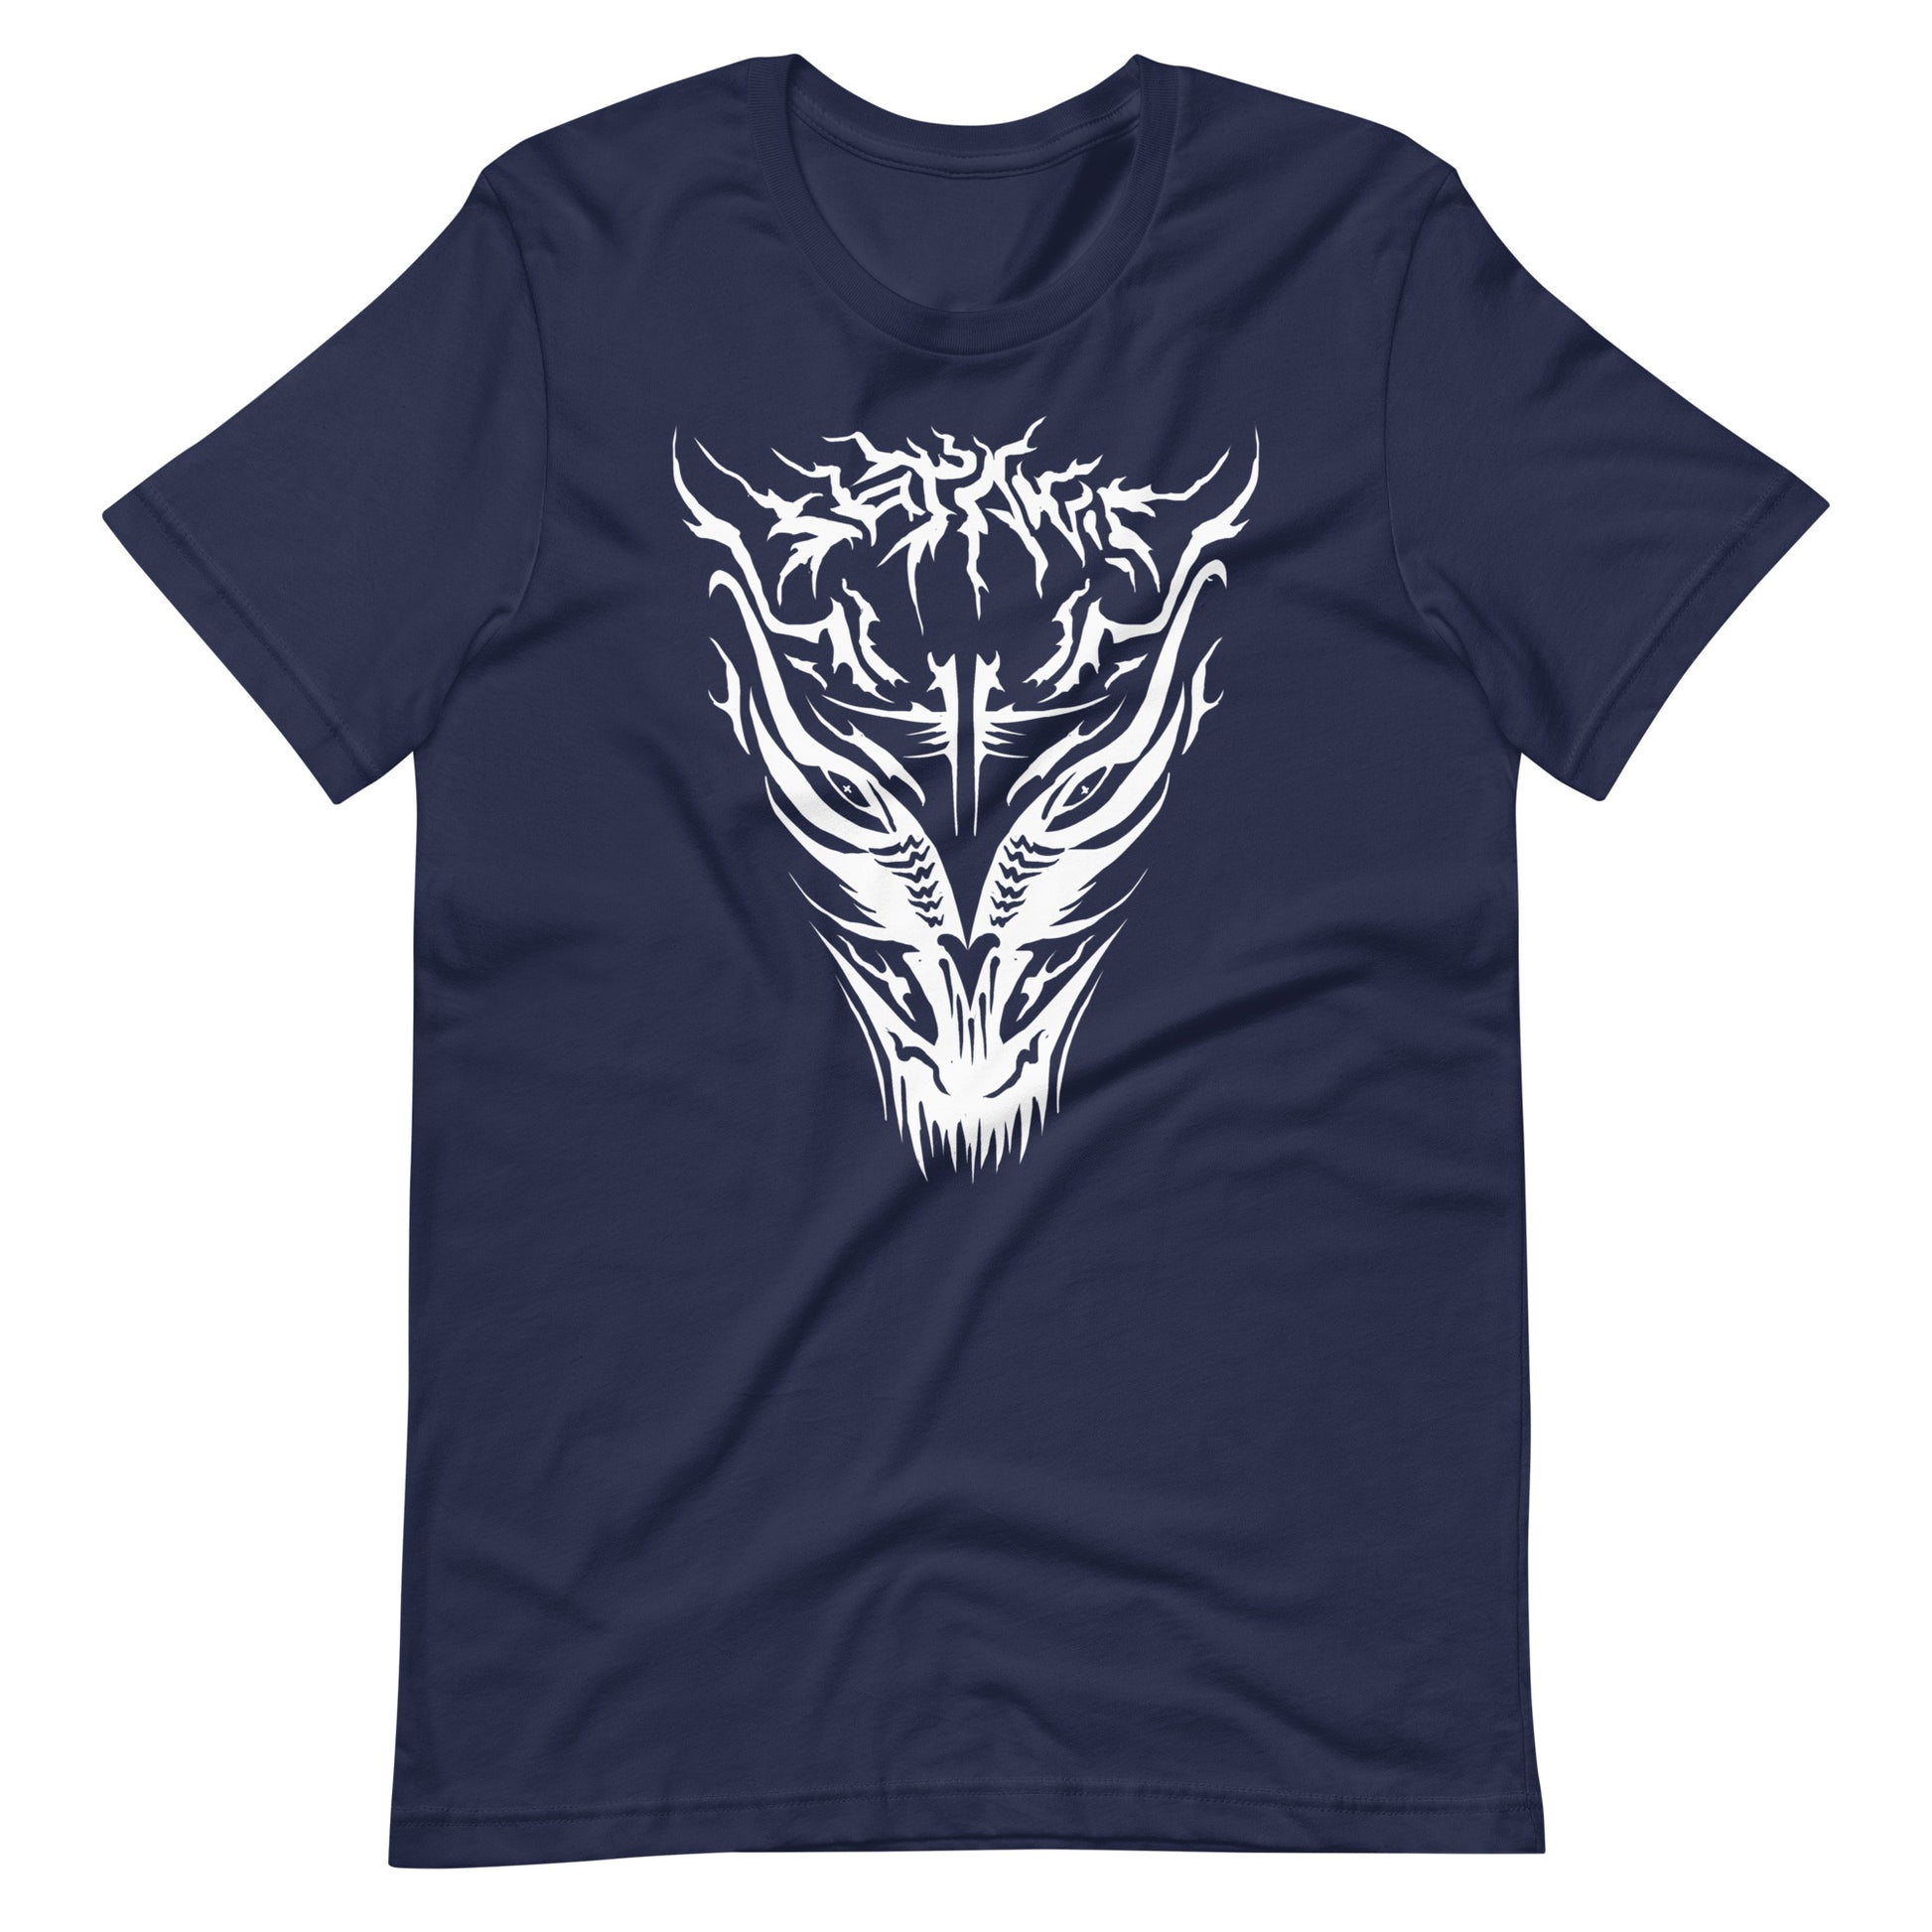 Demon - Men's t-shirt - Navy Front